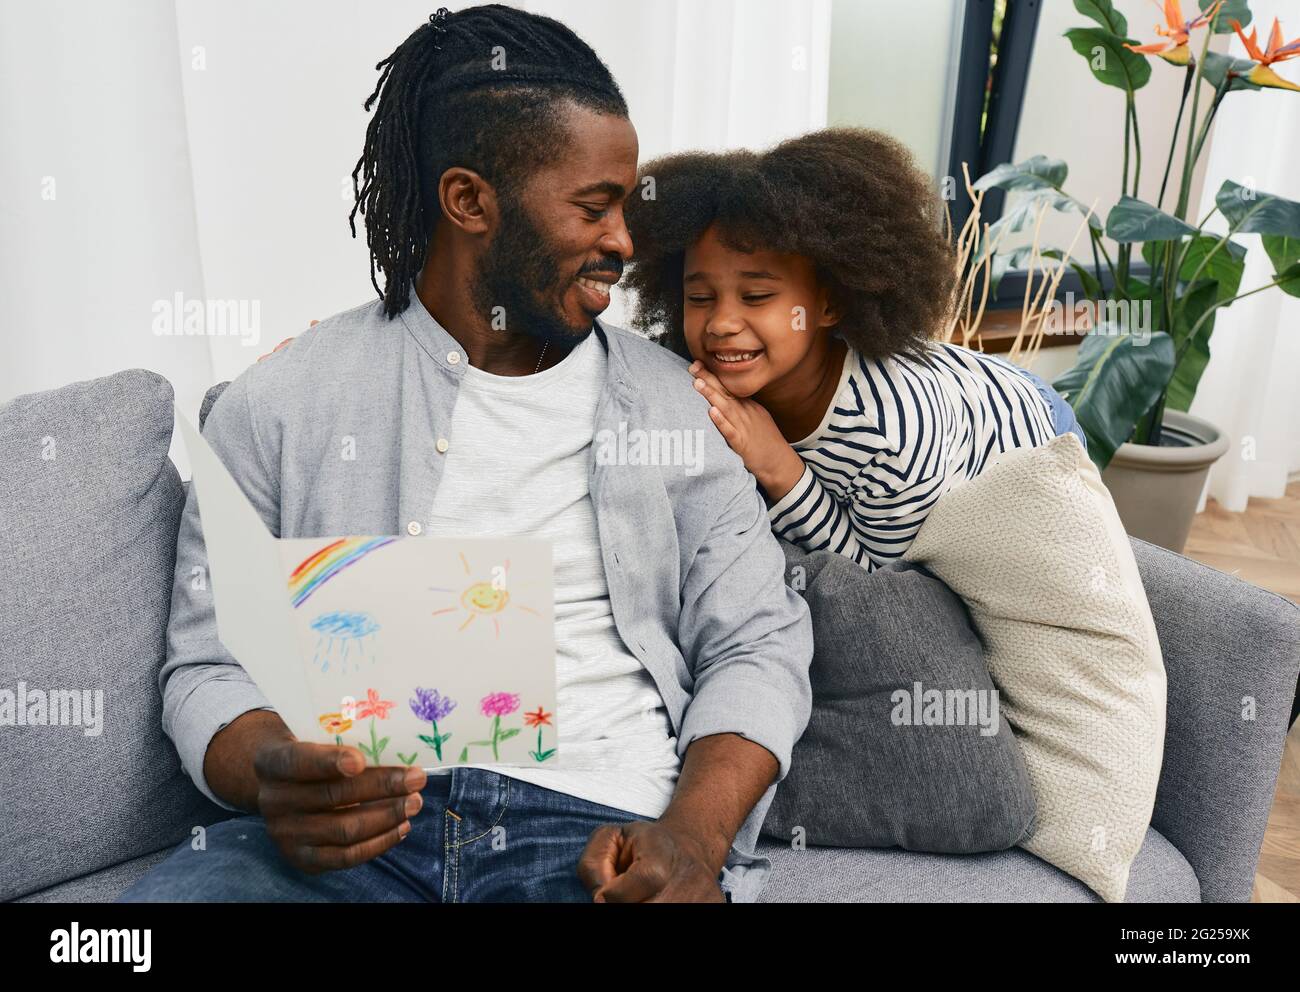 Relation père-fille. Papa est heureux de recevoir une carte de voeux avec un dessin d'enfant de sa fille à la fête du père, assis sur un canapé à h Banque D'Images